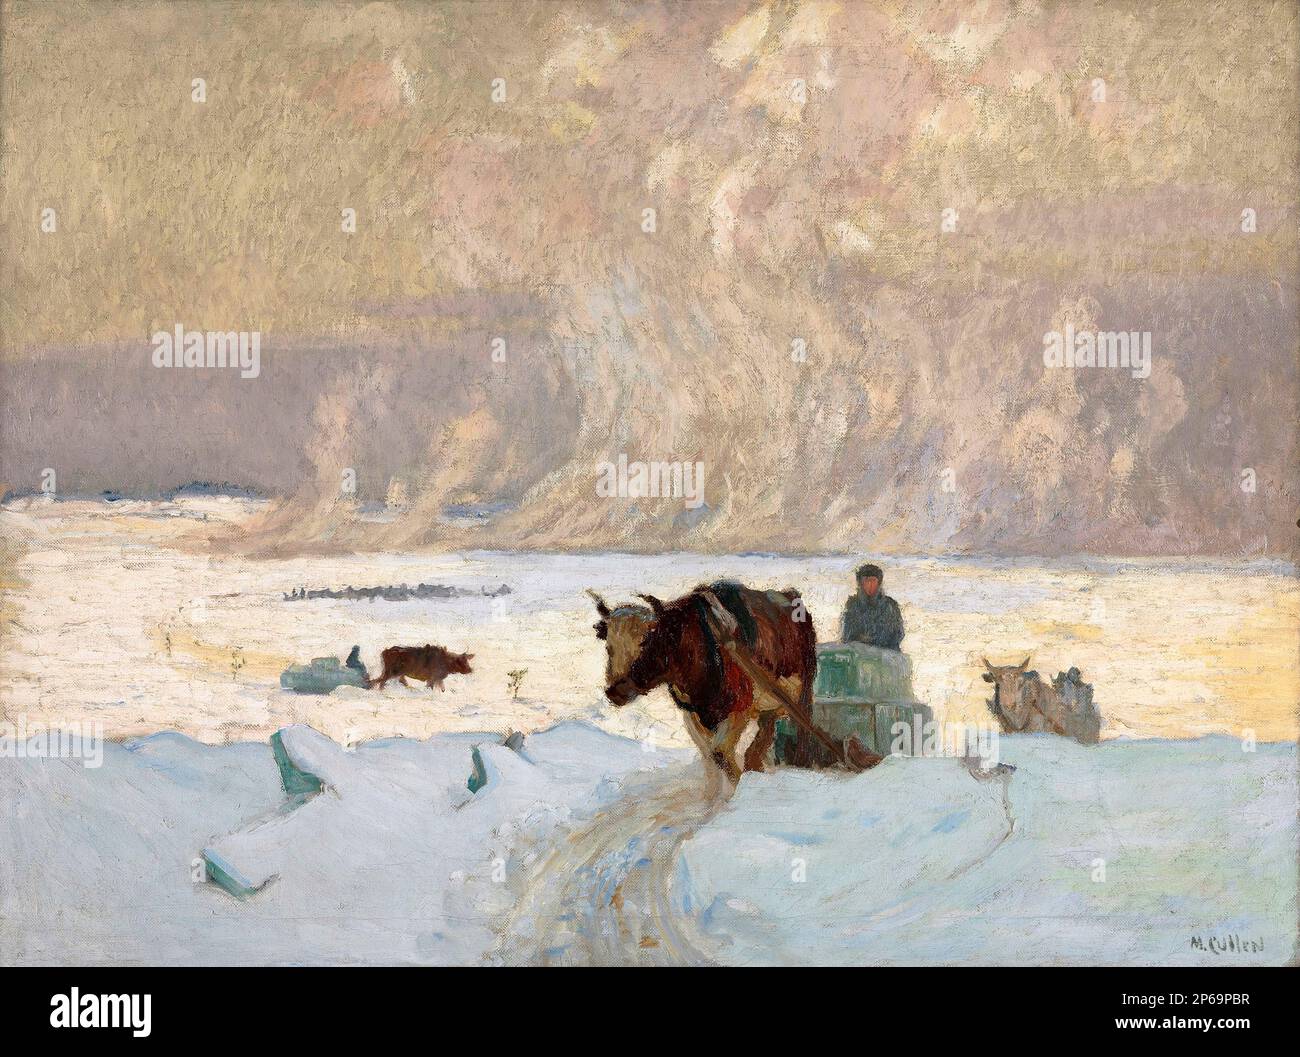 La raccolta del ghiaccio dell'artista canadese Maurice Cullen (1866-1934), olio su tela, 1913 Foto Stock